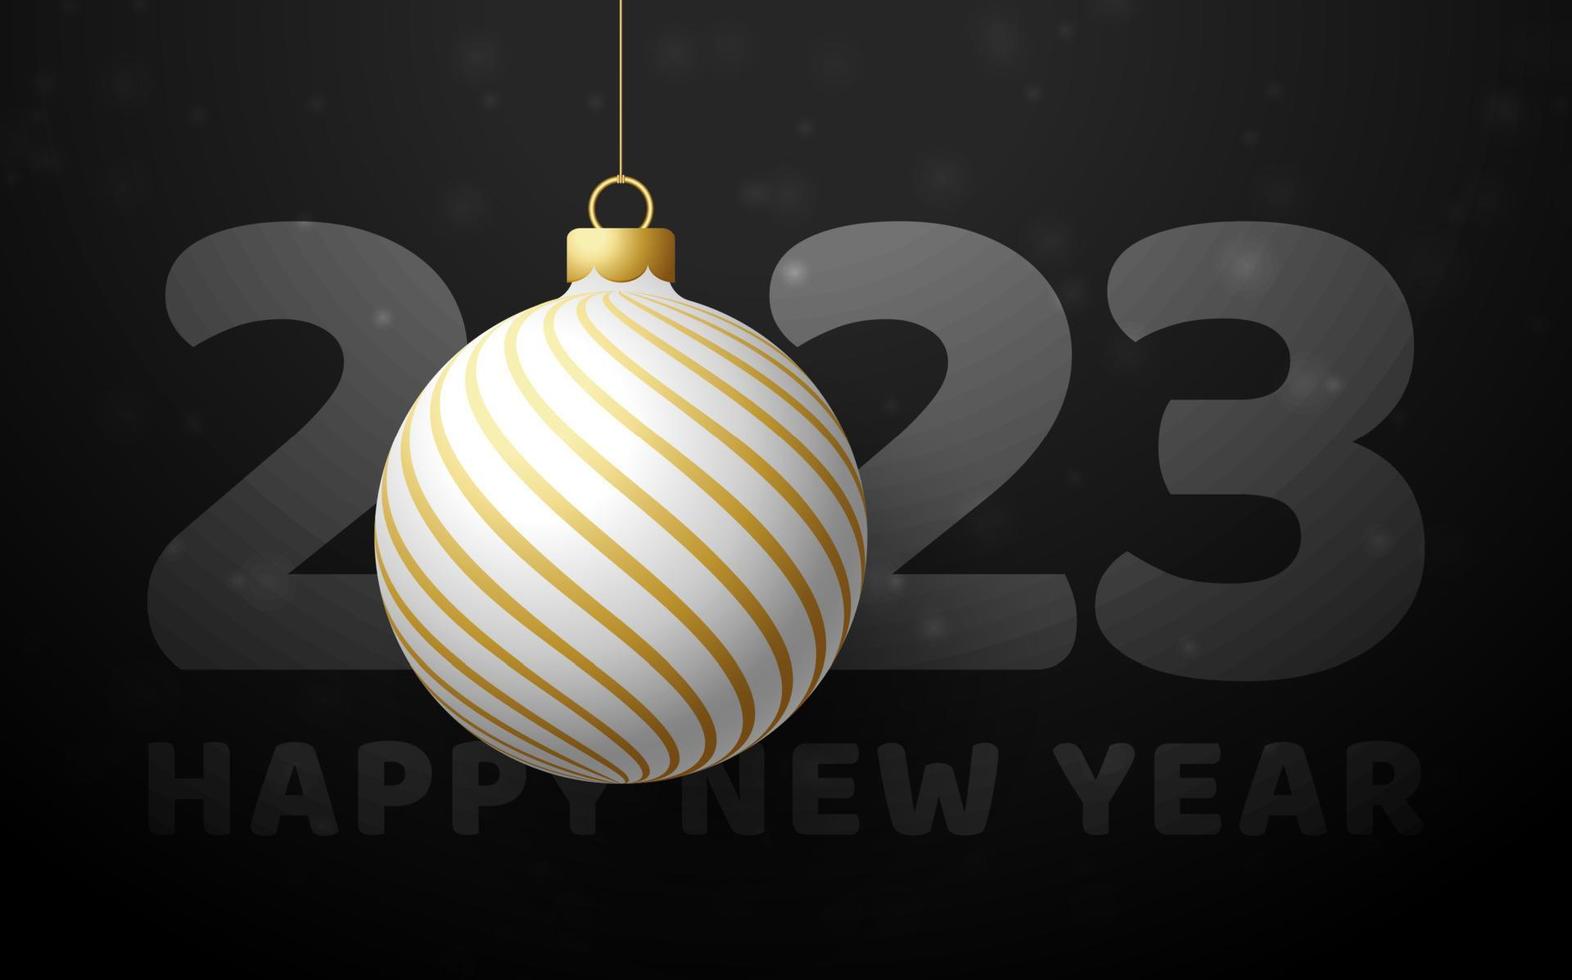 2023 feliz ano novo. cartão de luxo com uma bola de árvore de natal branca e dourada no fundo preto real. vetor